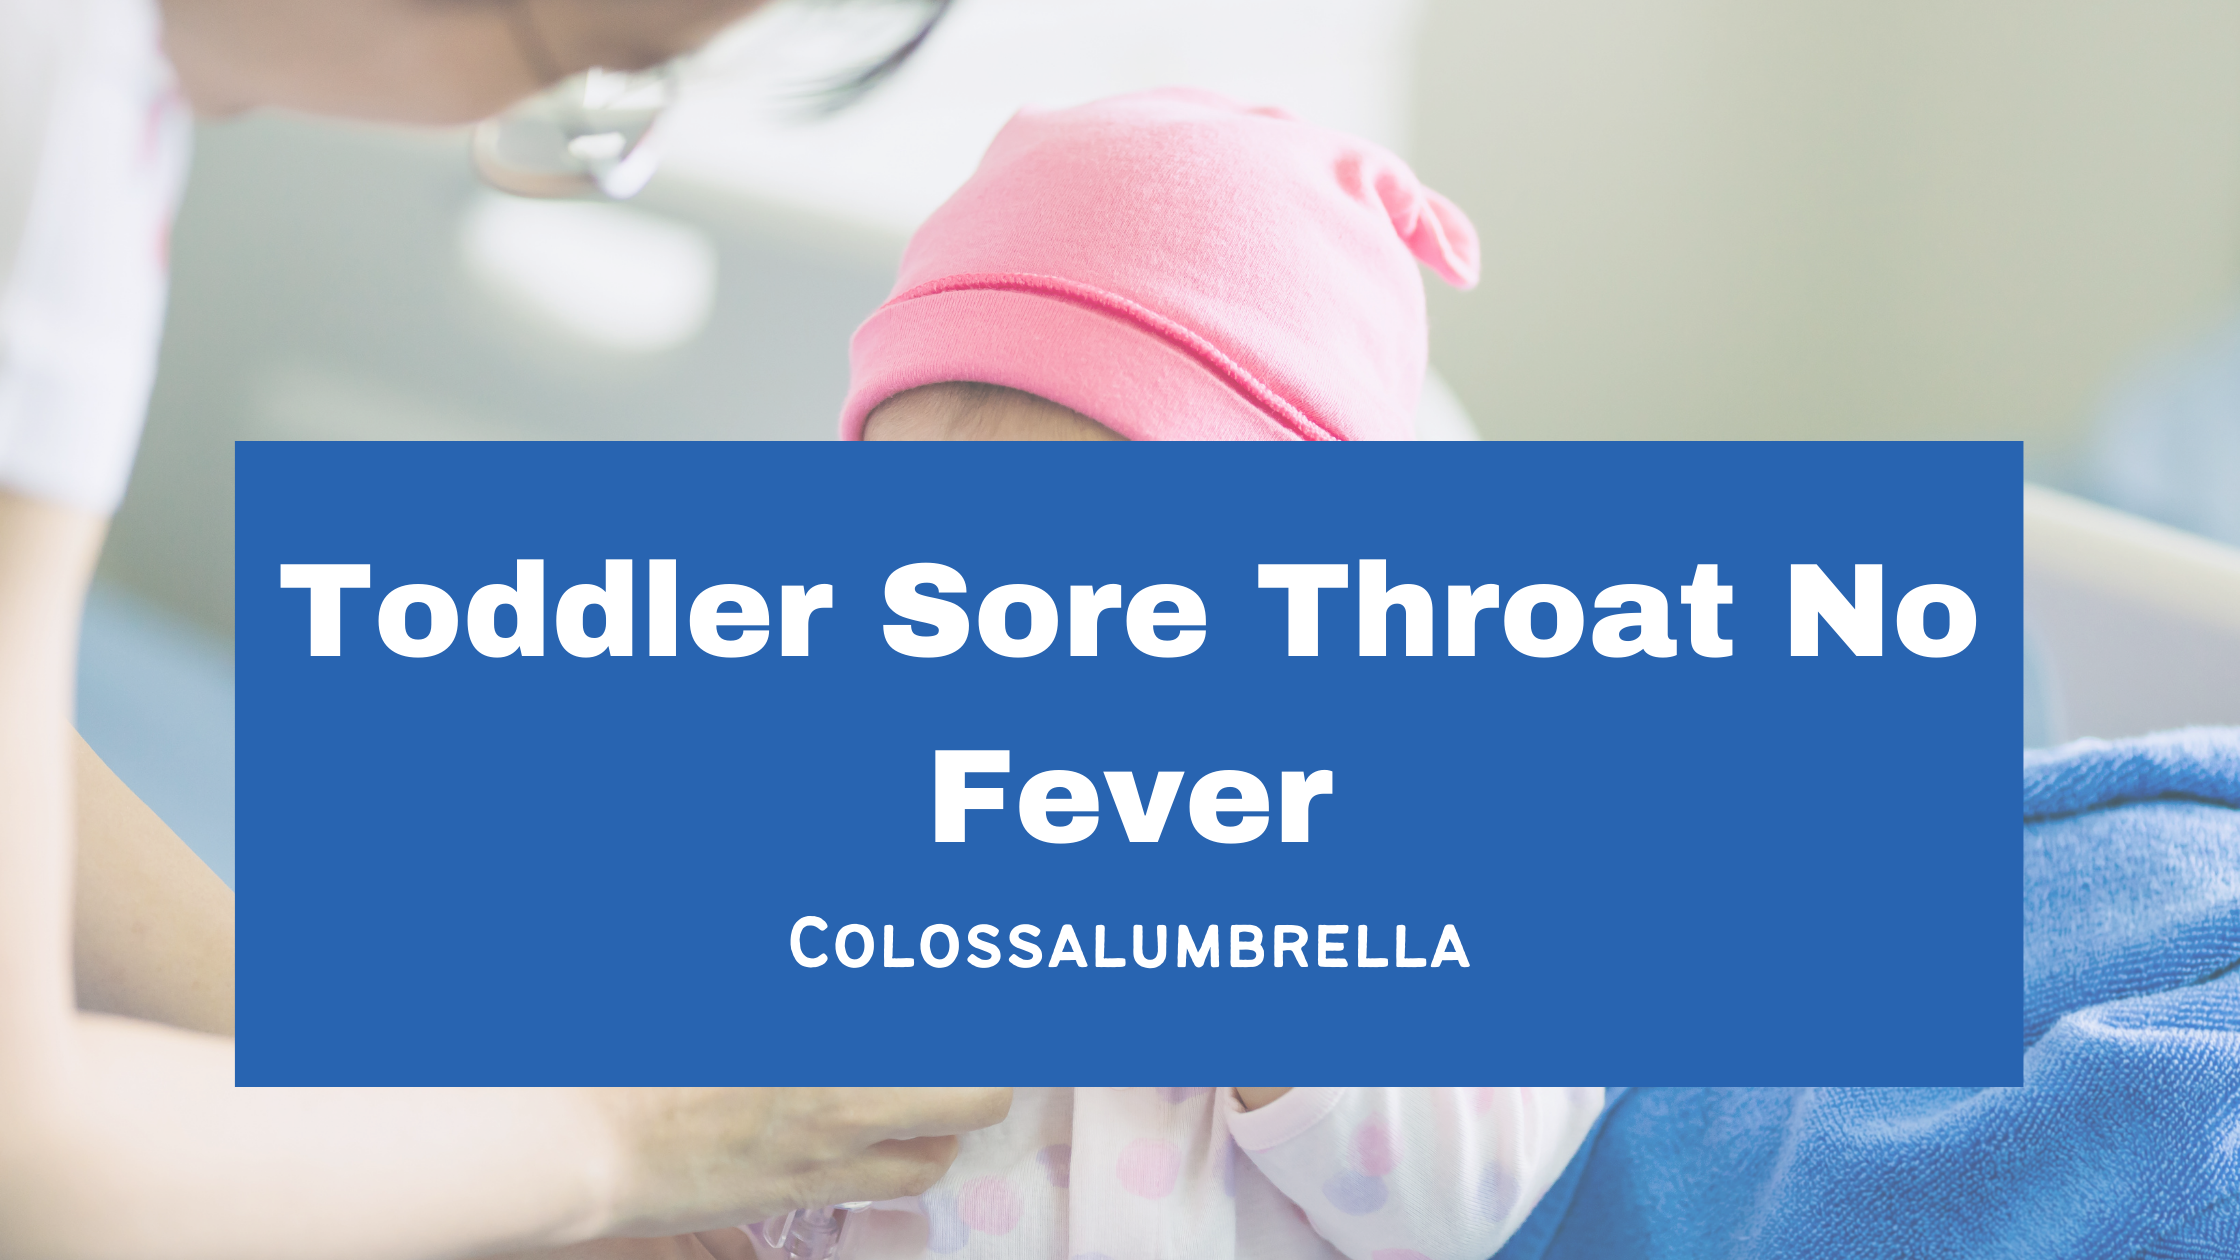 Toddler Sore Throat No Fever